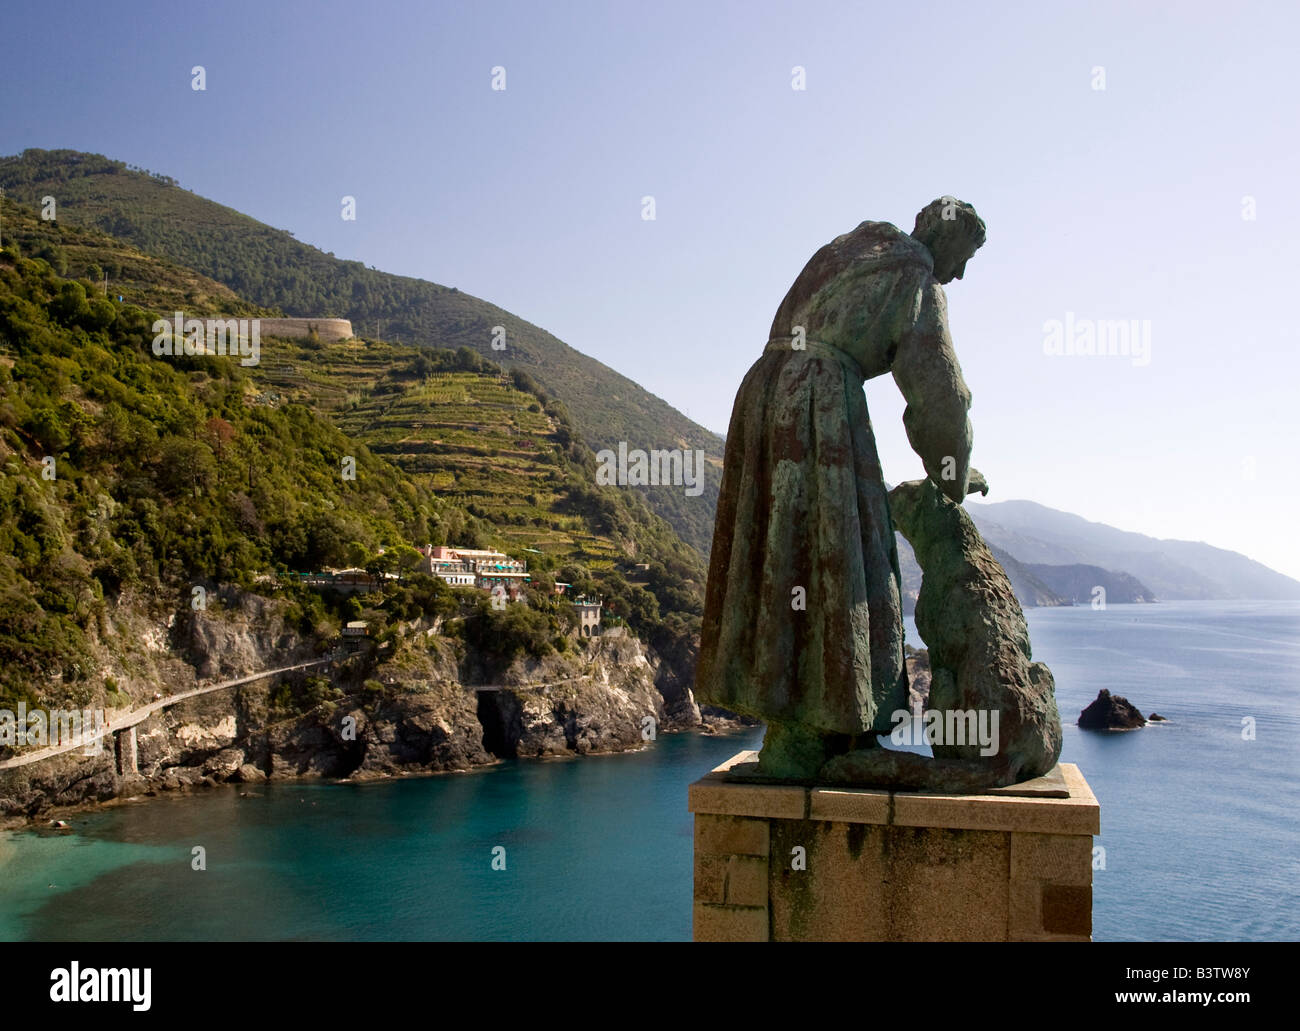 L'Europe, l'Italie, les Cinque Terre, Monterosso. Une statue de saint François d'assise de flatter un chien et donnant sur la mer. Banque D'Images